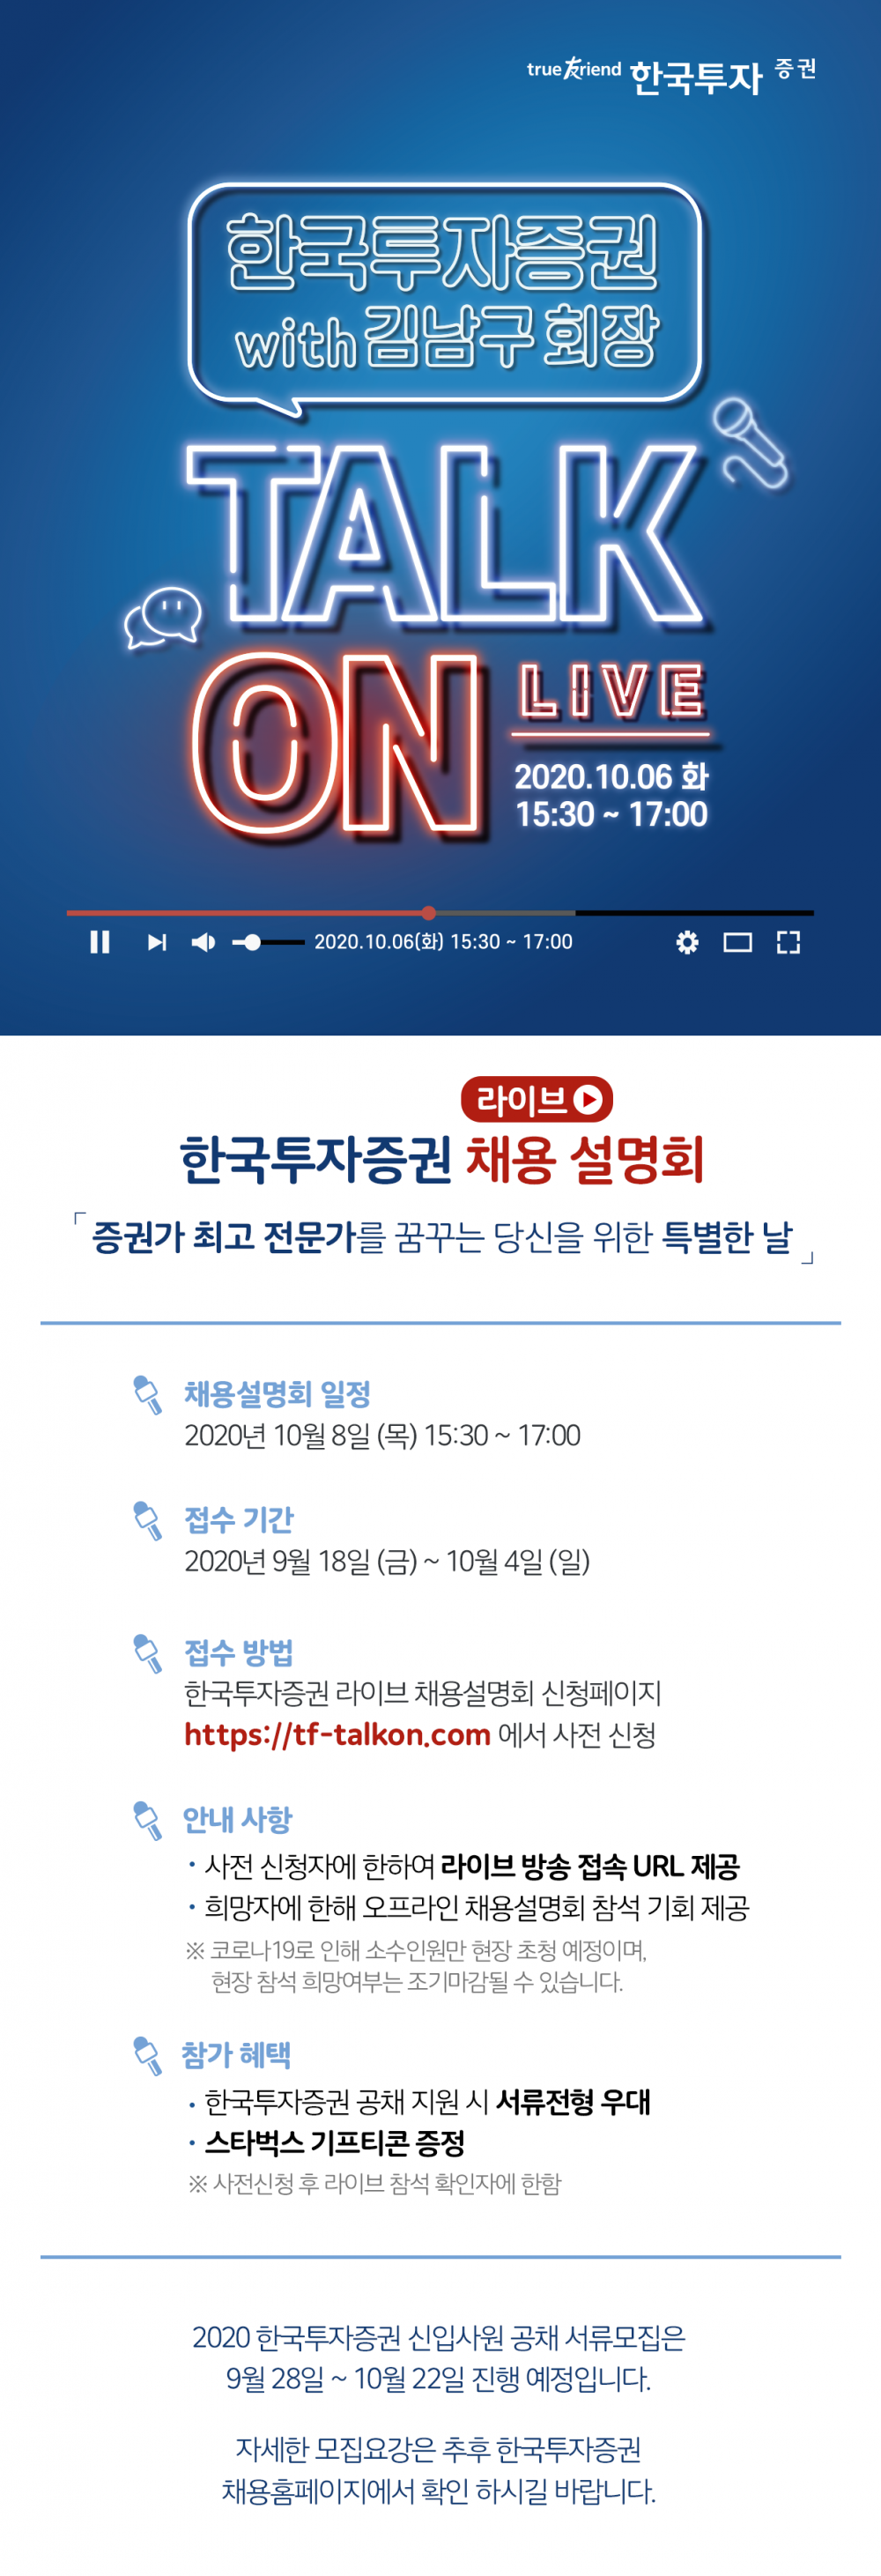 2020_한국투자증권_공채 채용설명회 홍보물